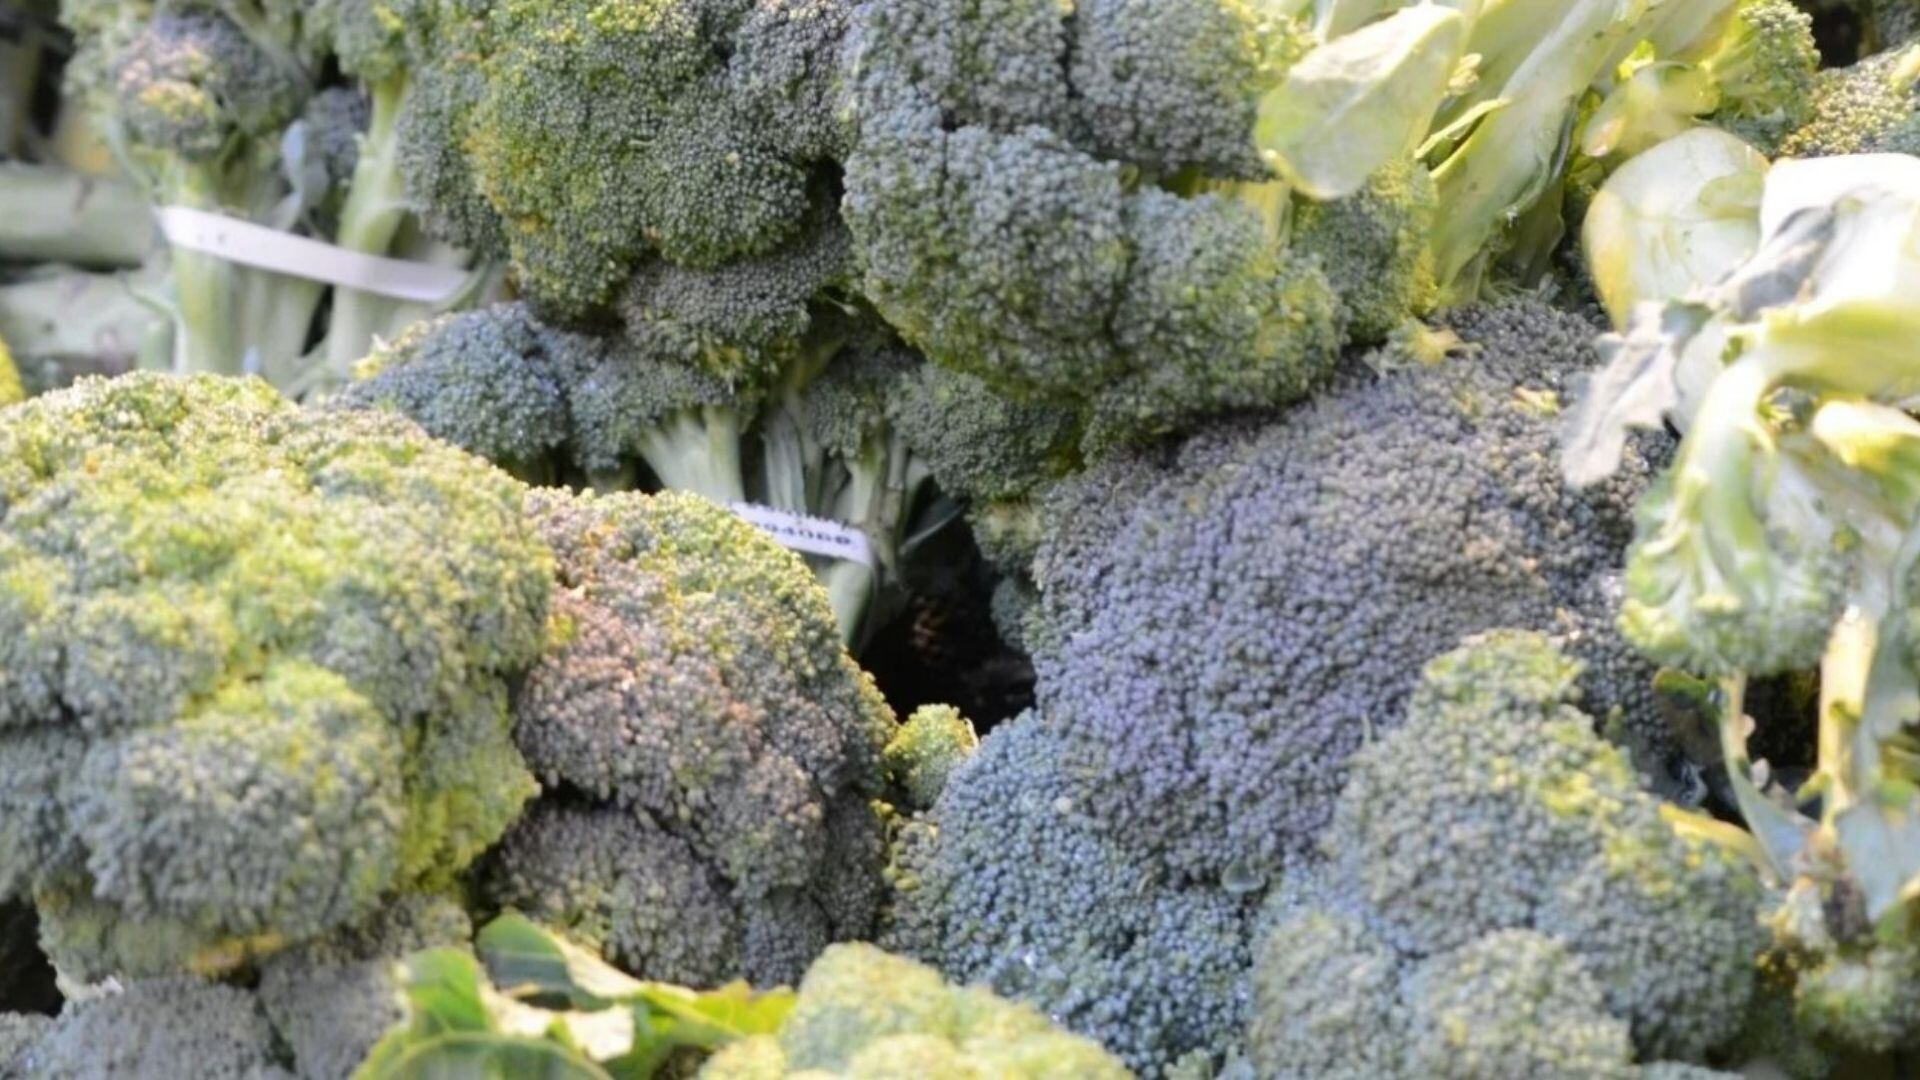 En las primeras semanas de mayo arribará el primer envío de Nariño a territorio estadounidense de brócoli, coliflor y zanahoria ultracongelados de la empresa Alimentos de Nariño ZF. Foto: ProColombia.